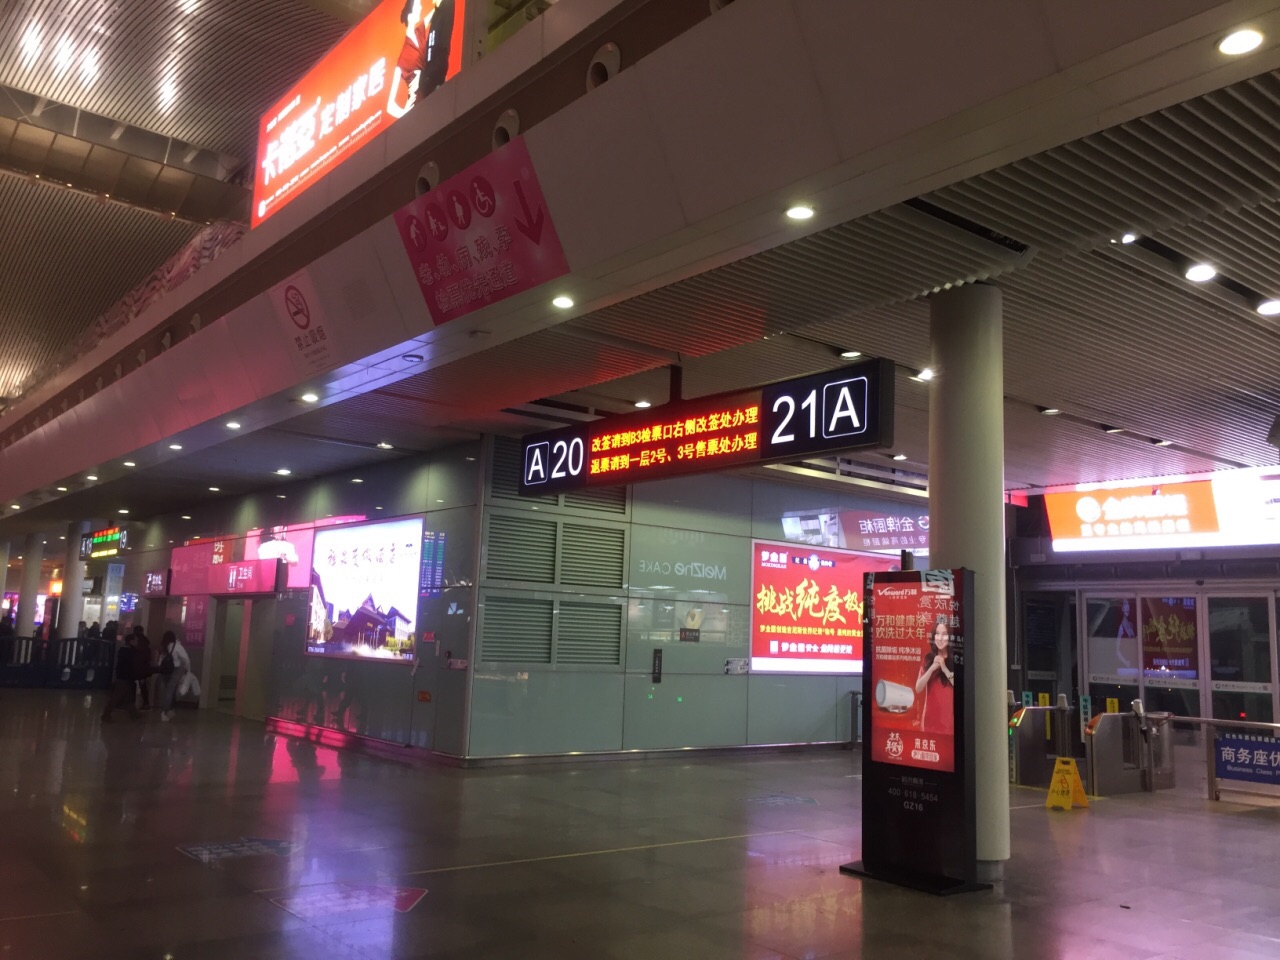 第一次去广州南站,去了才知道原来规模是那么宏大,里面有众多的检票